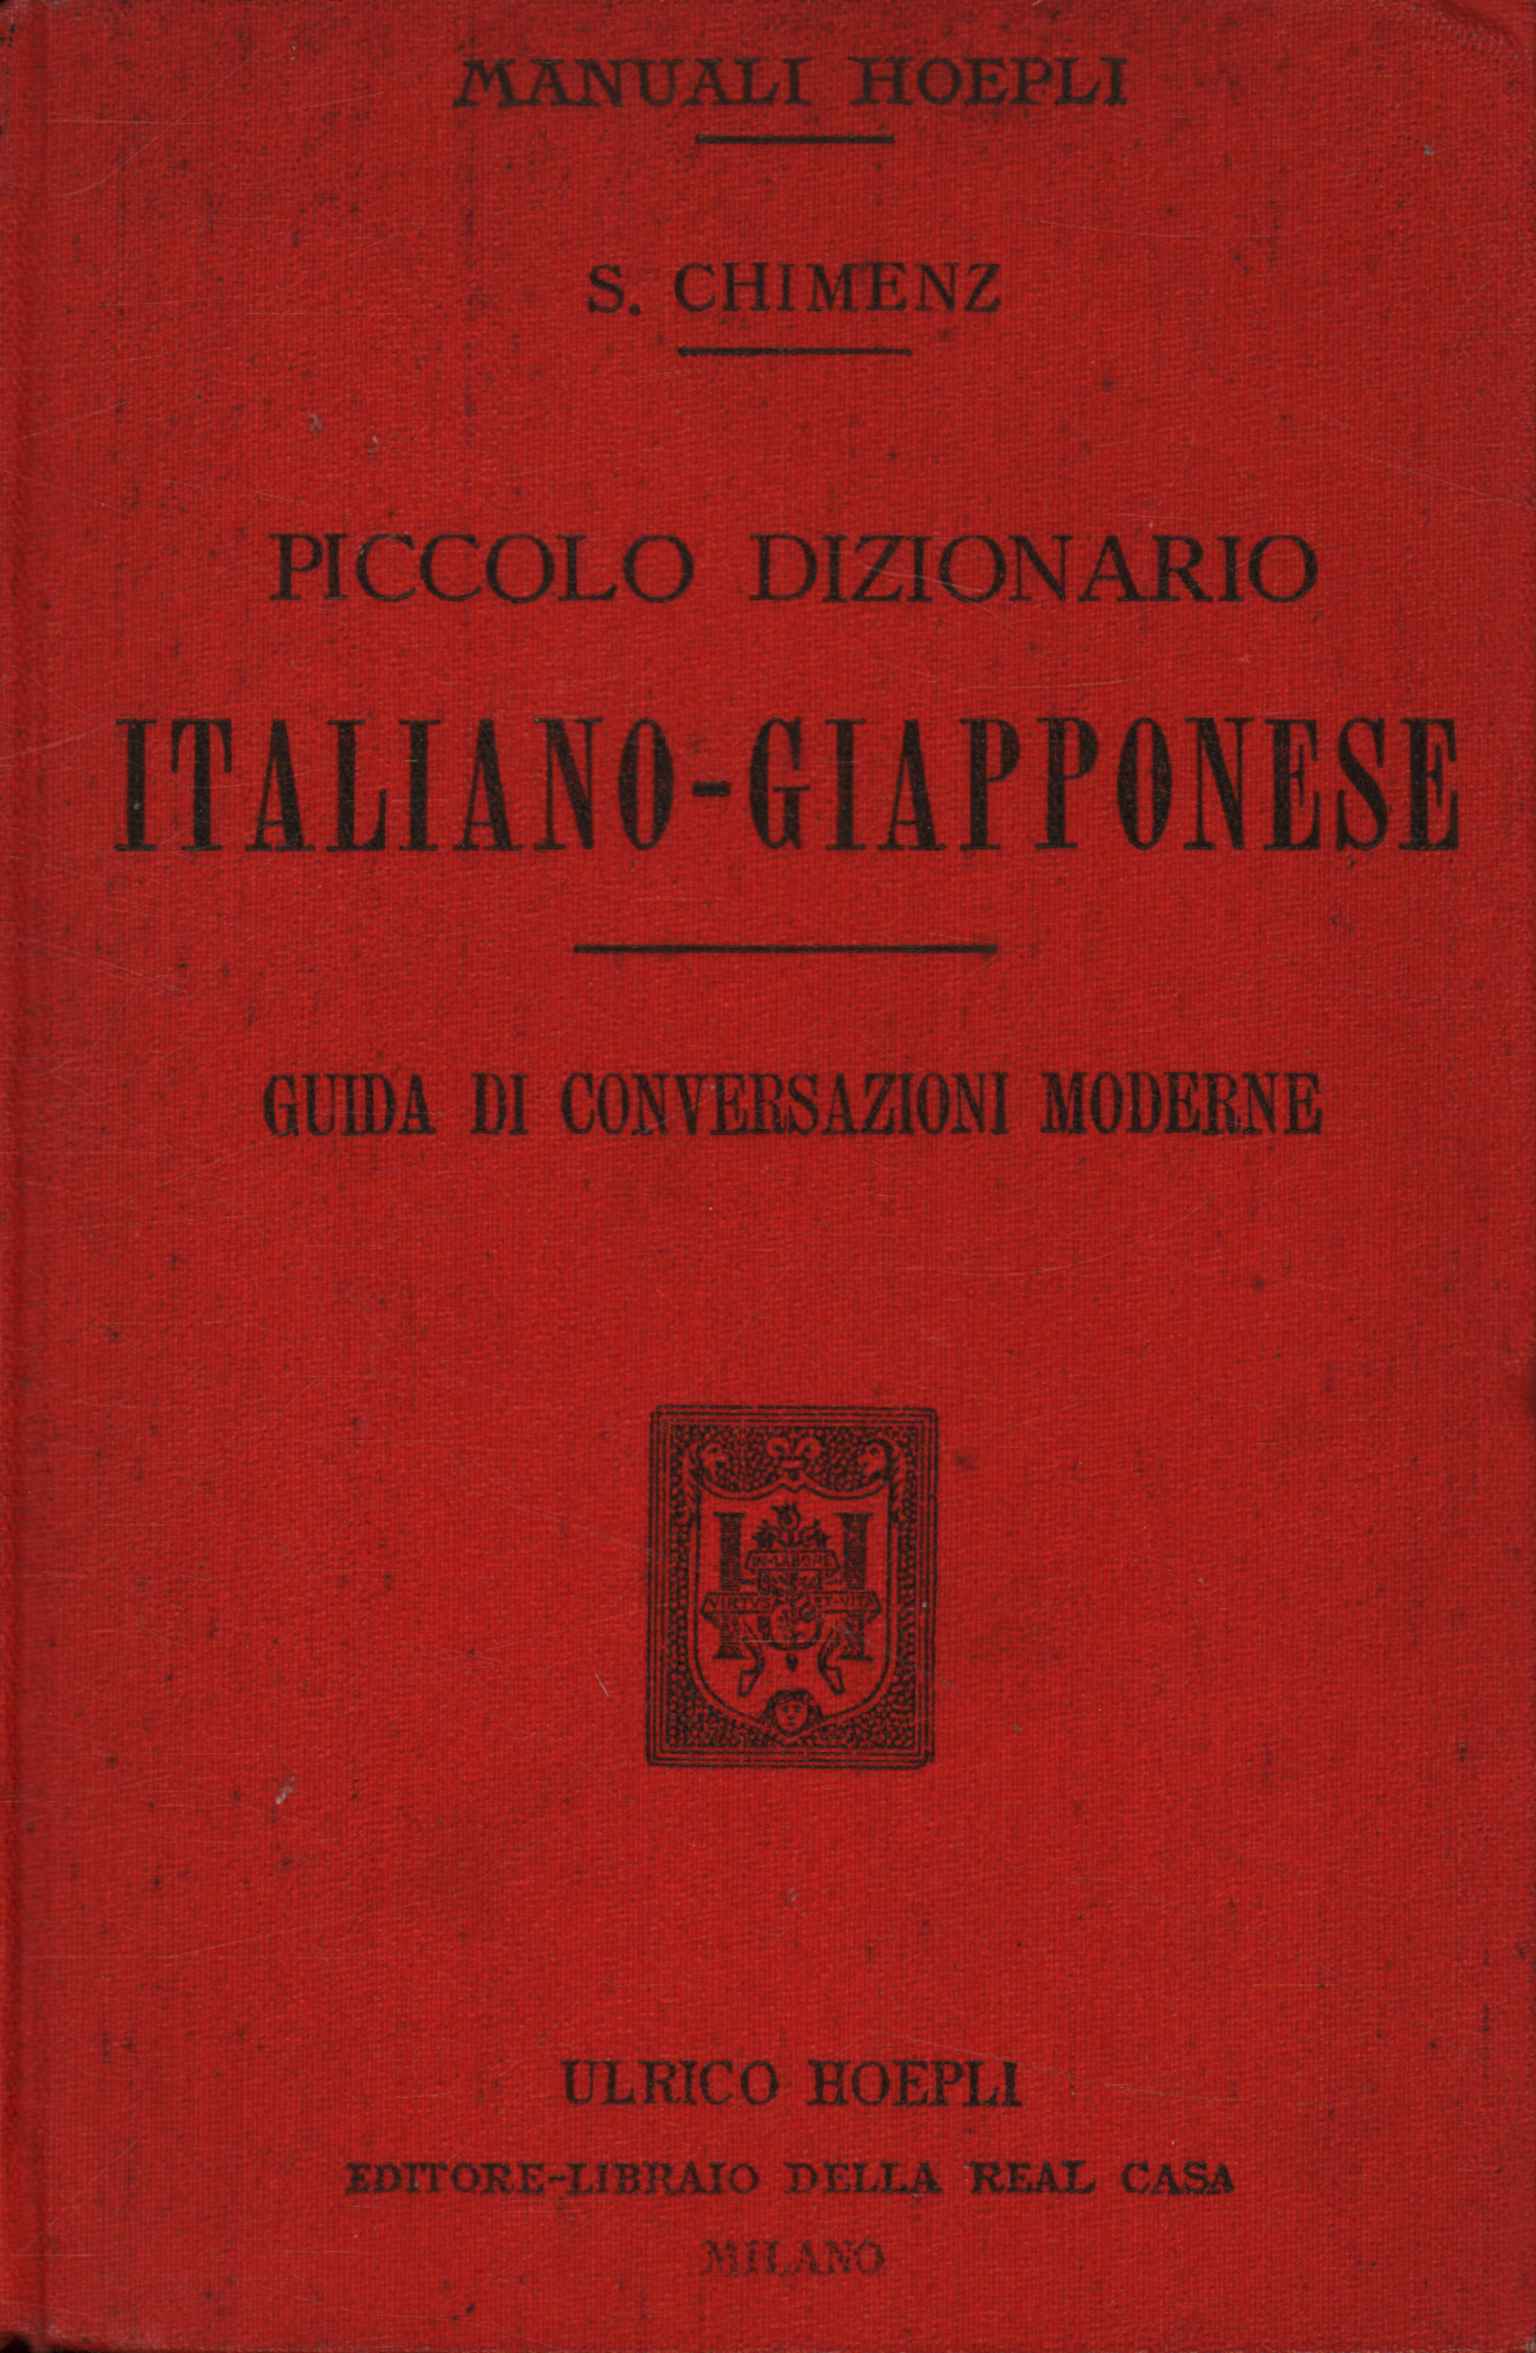 Small Italian-Japanese Dictionary